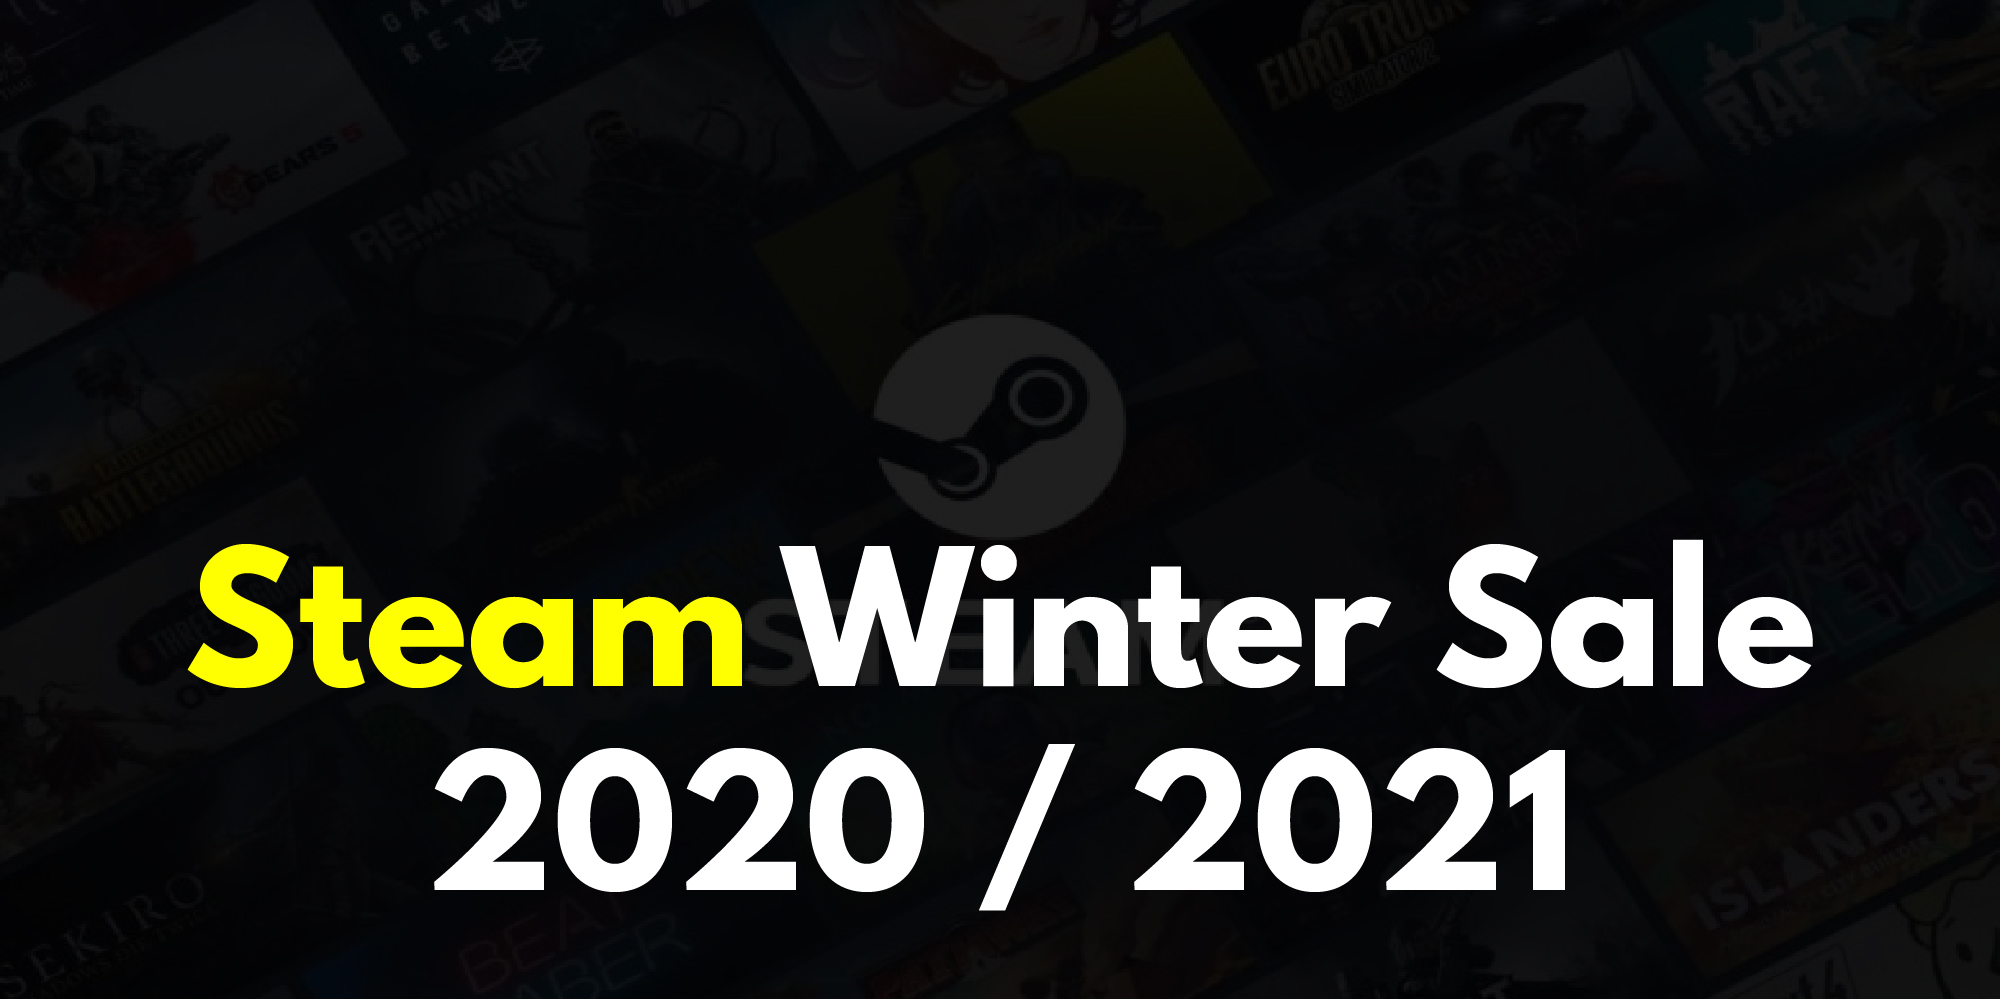 Steam Winter Sale 2020